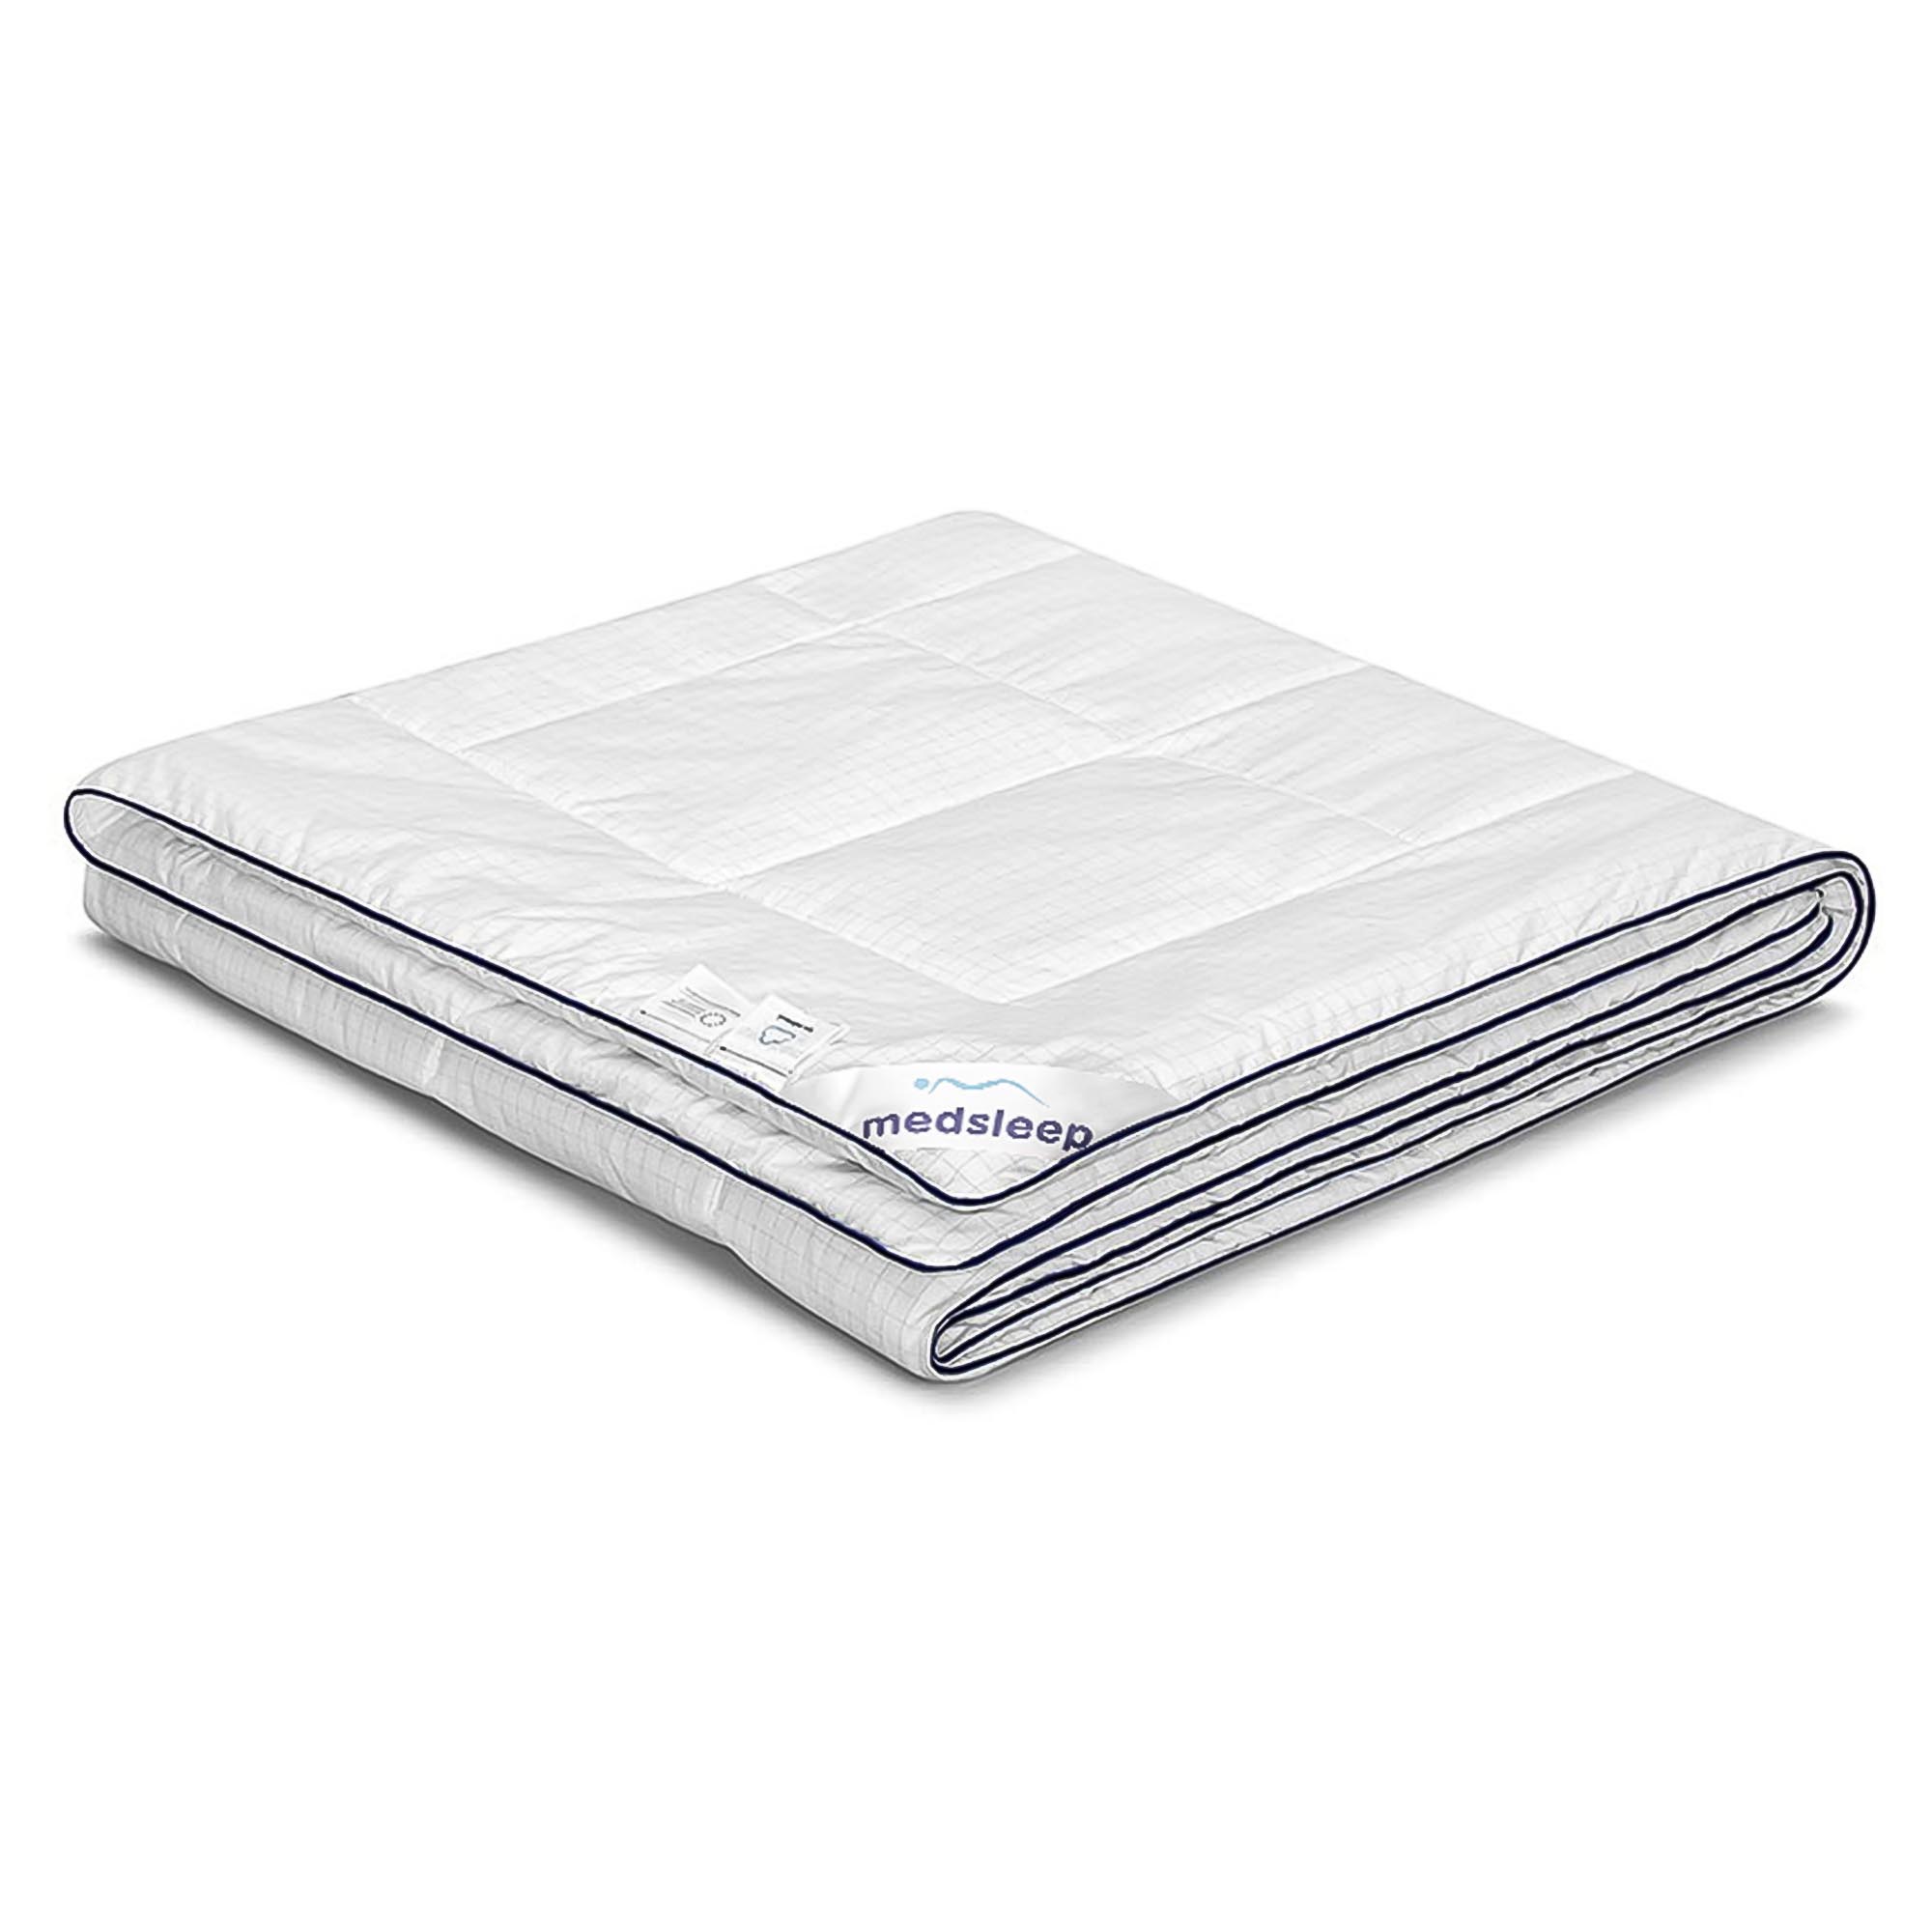 Одеяло Medsleep Nubi белое 175х200 см одеяло лебяжий пух premium р 172х205